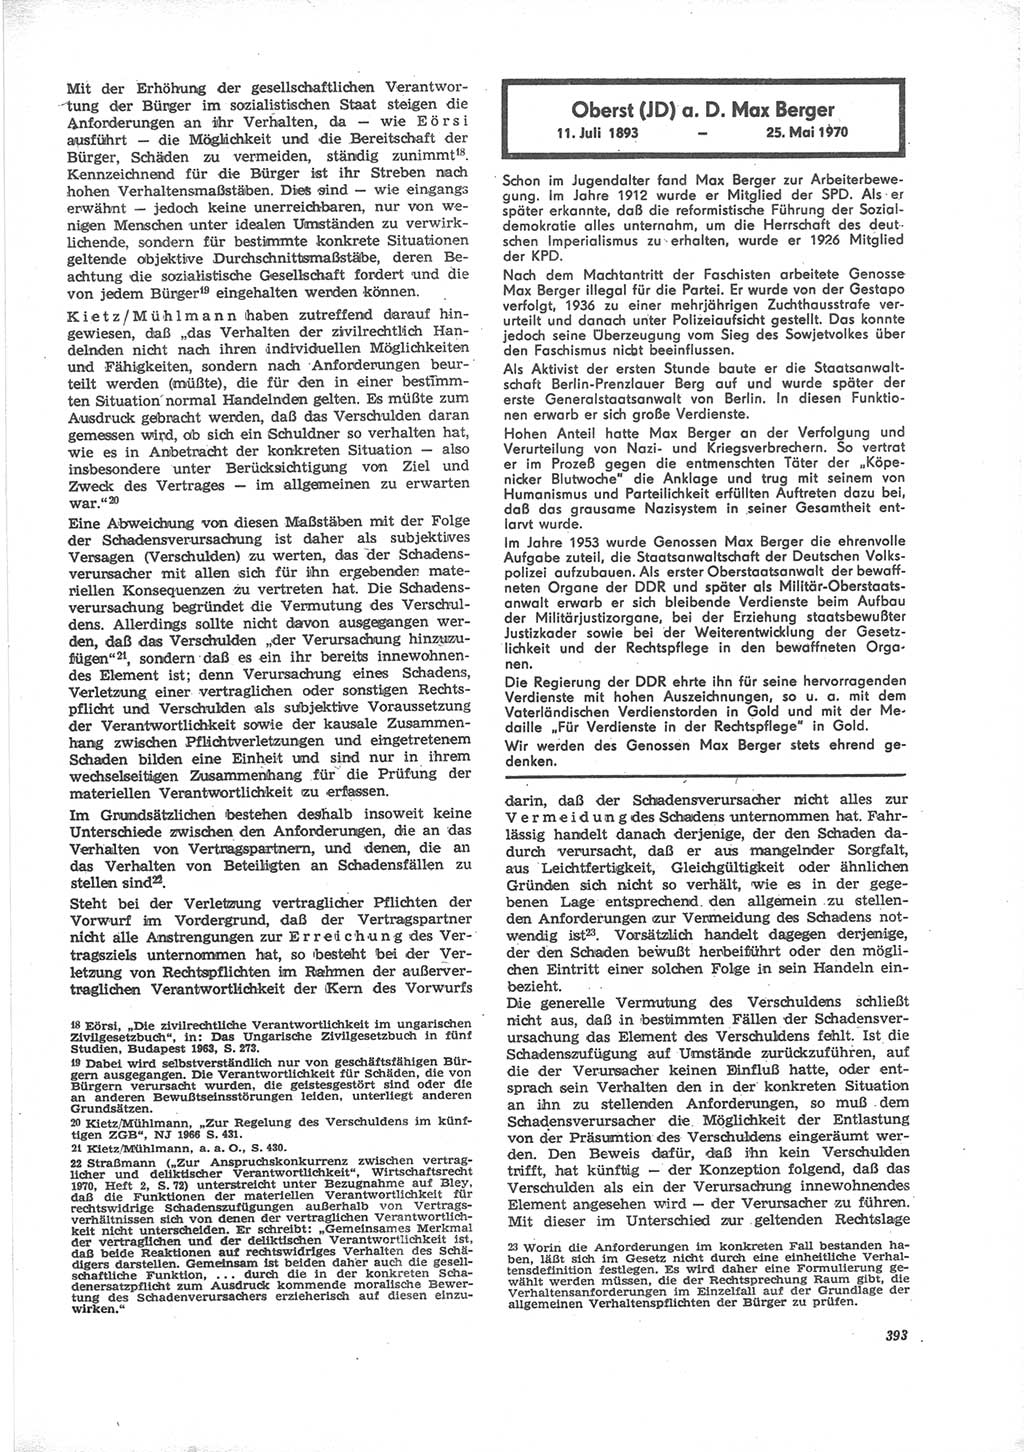 Neue Justiz (NJ), Zeitschrift für Recht und Rechtswissenschaft [Deutsche Demokratische Republik (DDR)], 24. Jahrgang 1970, Seite 393 (NJ DDR 1970, S. 393)